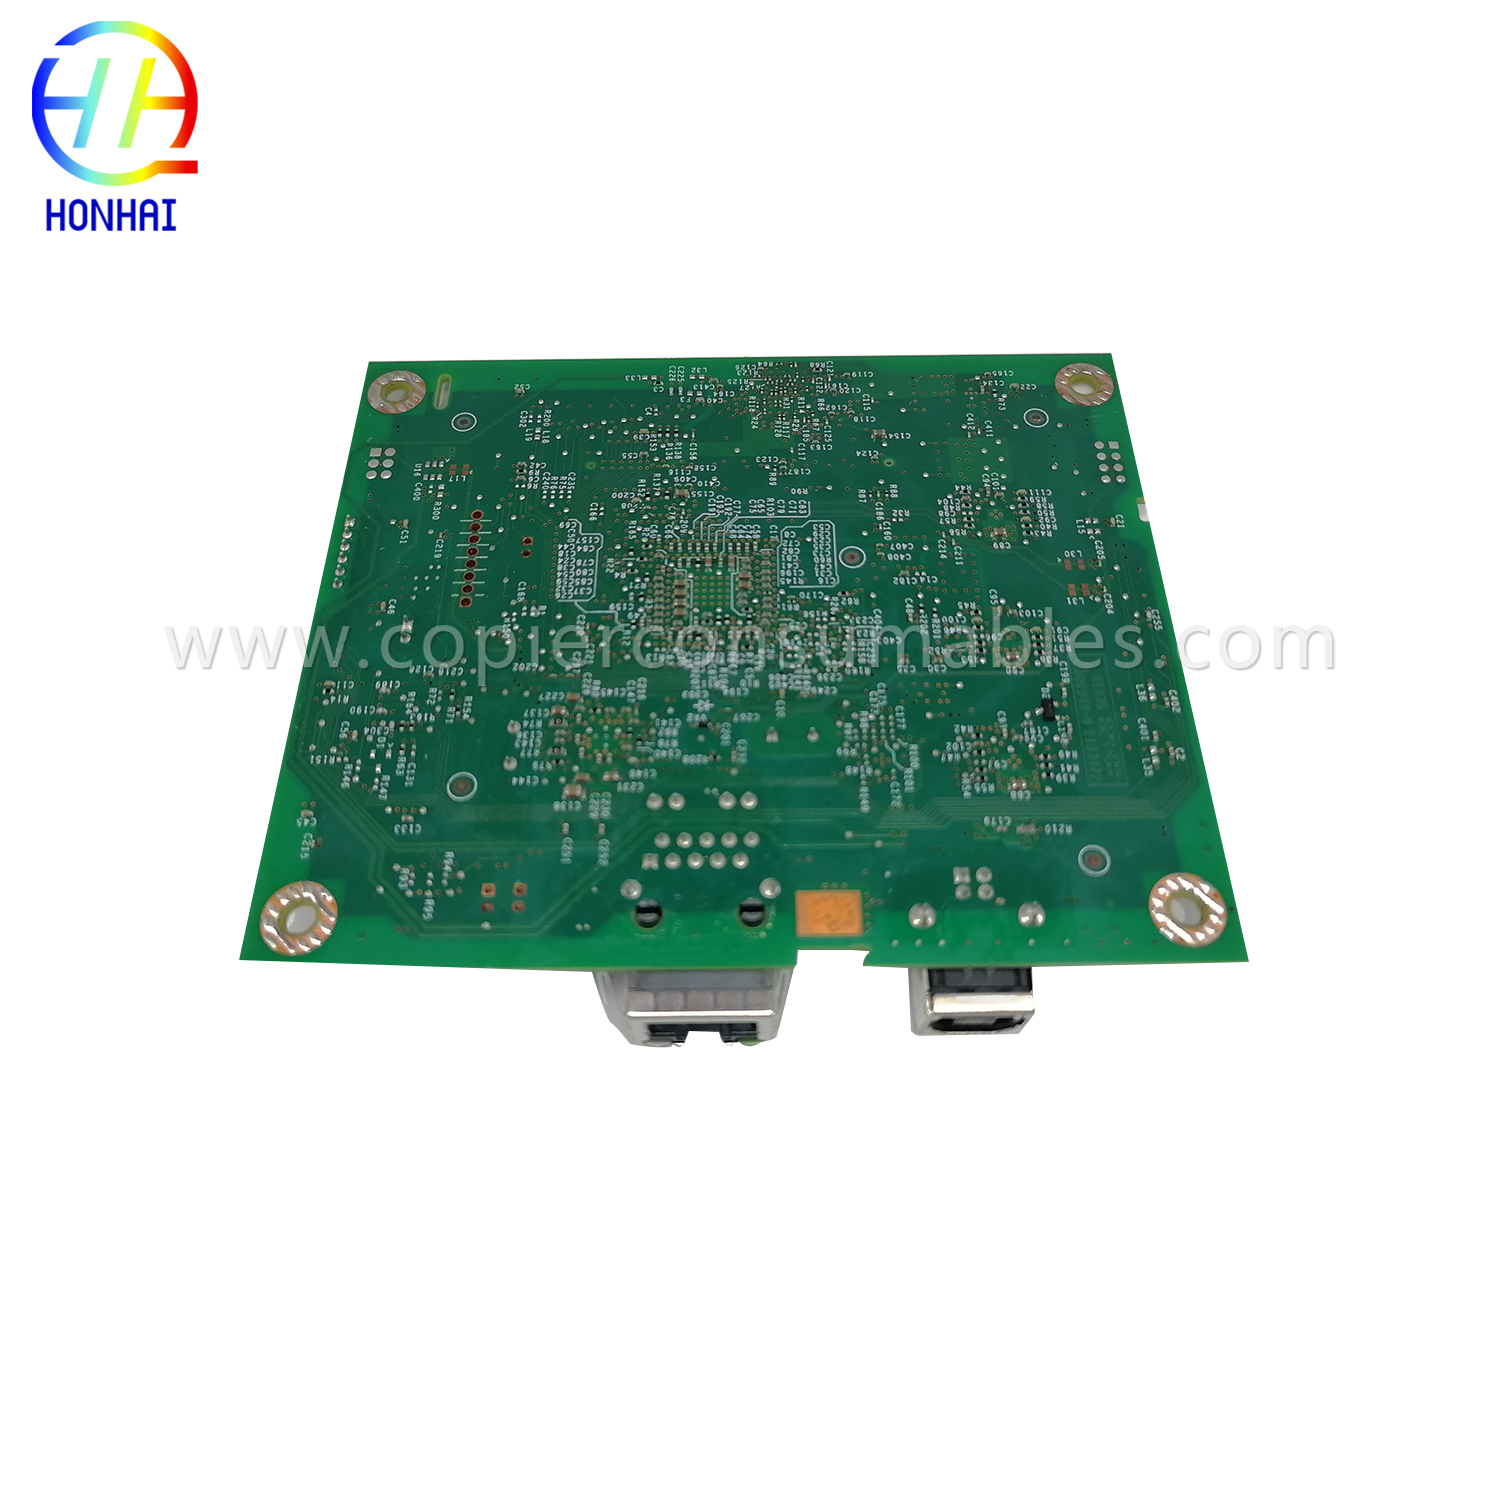 Formatter Board for HP CF149-60001 LaserJet Pro 400 M401(5)